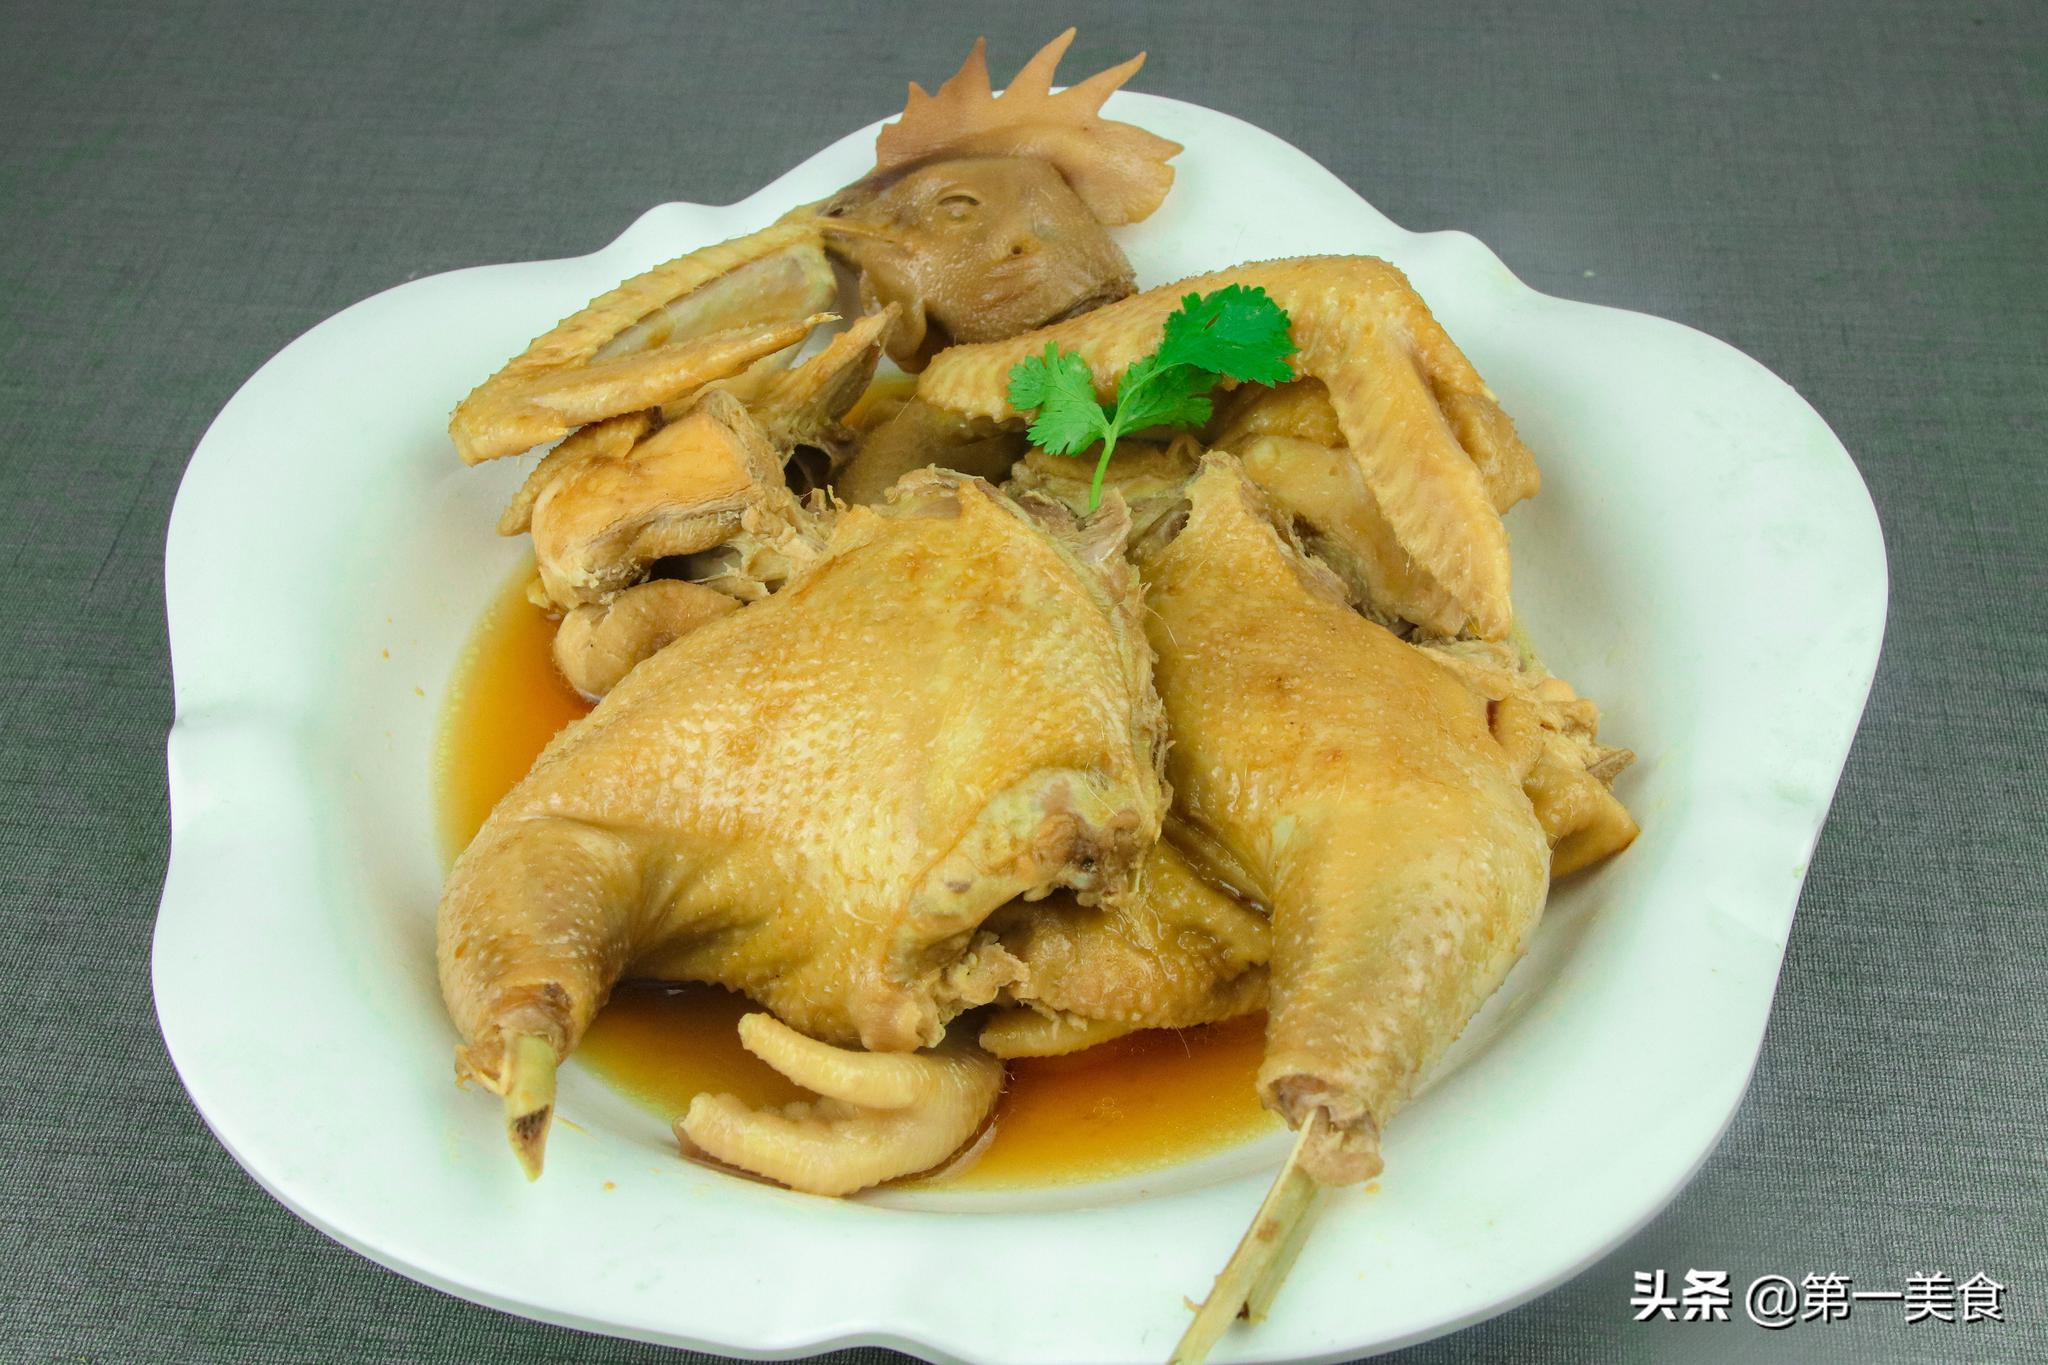 厨师长分享家常清蒸鸡做法,鸡肉爽滑细腻无腥味,营养价值高